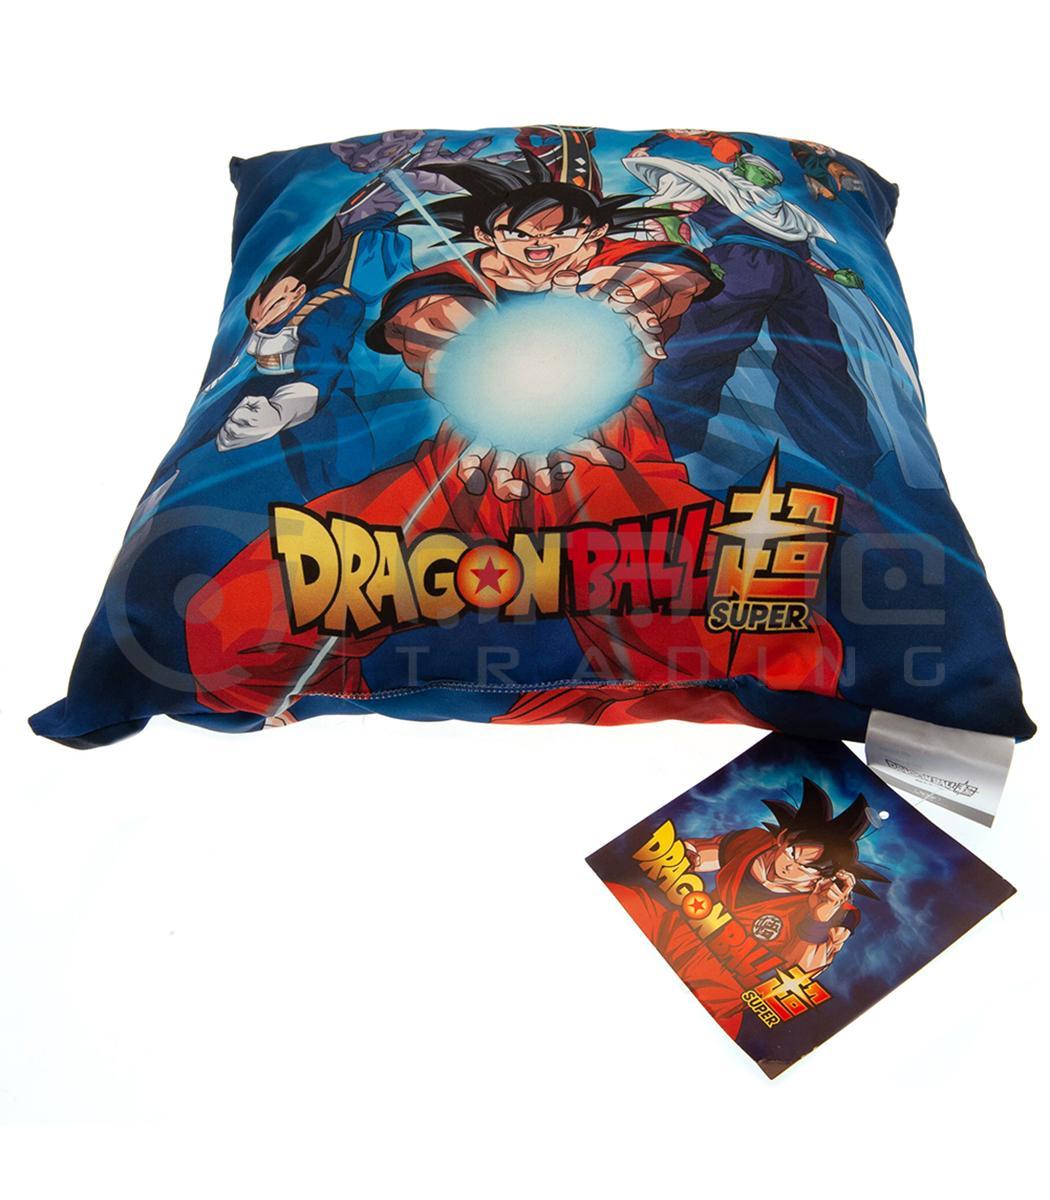 cushion dragon ball z plw007 b